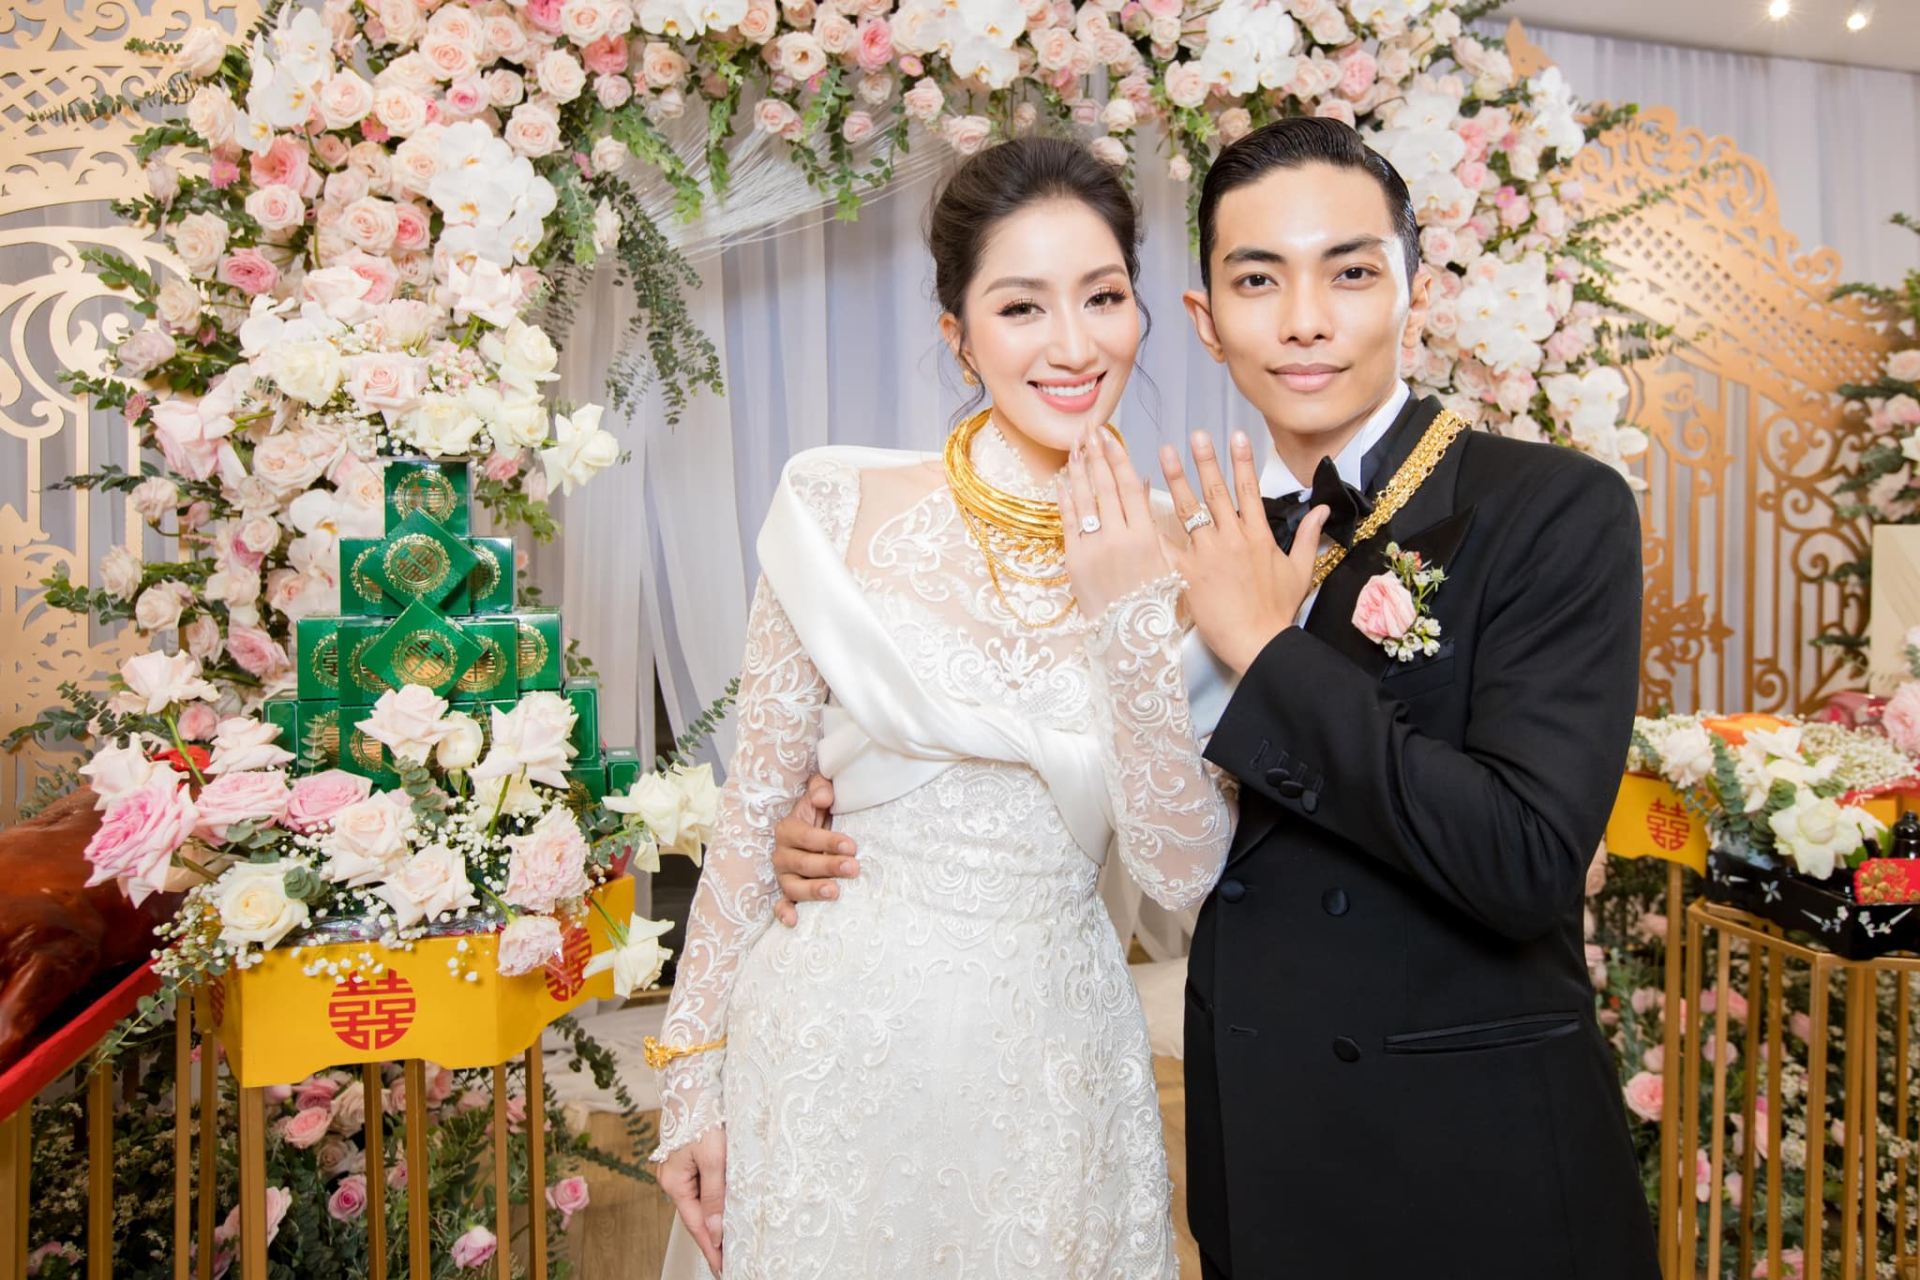 Phan Hiển vừa cưới đã 'nịnh vợ' số 1, đổi luôn ảnh đại diện sang hình 'nóc nhà' tự đánh dấu chủ quyền - ảnh 1